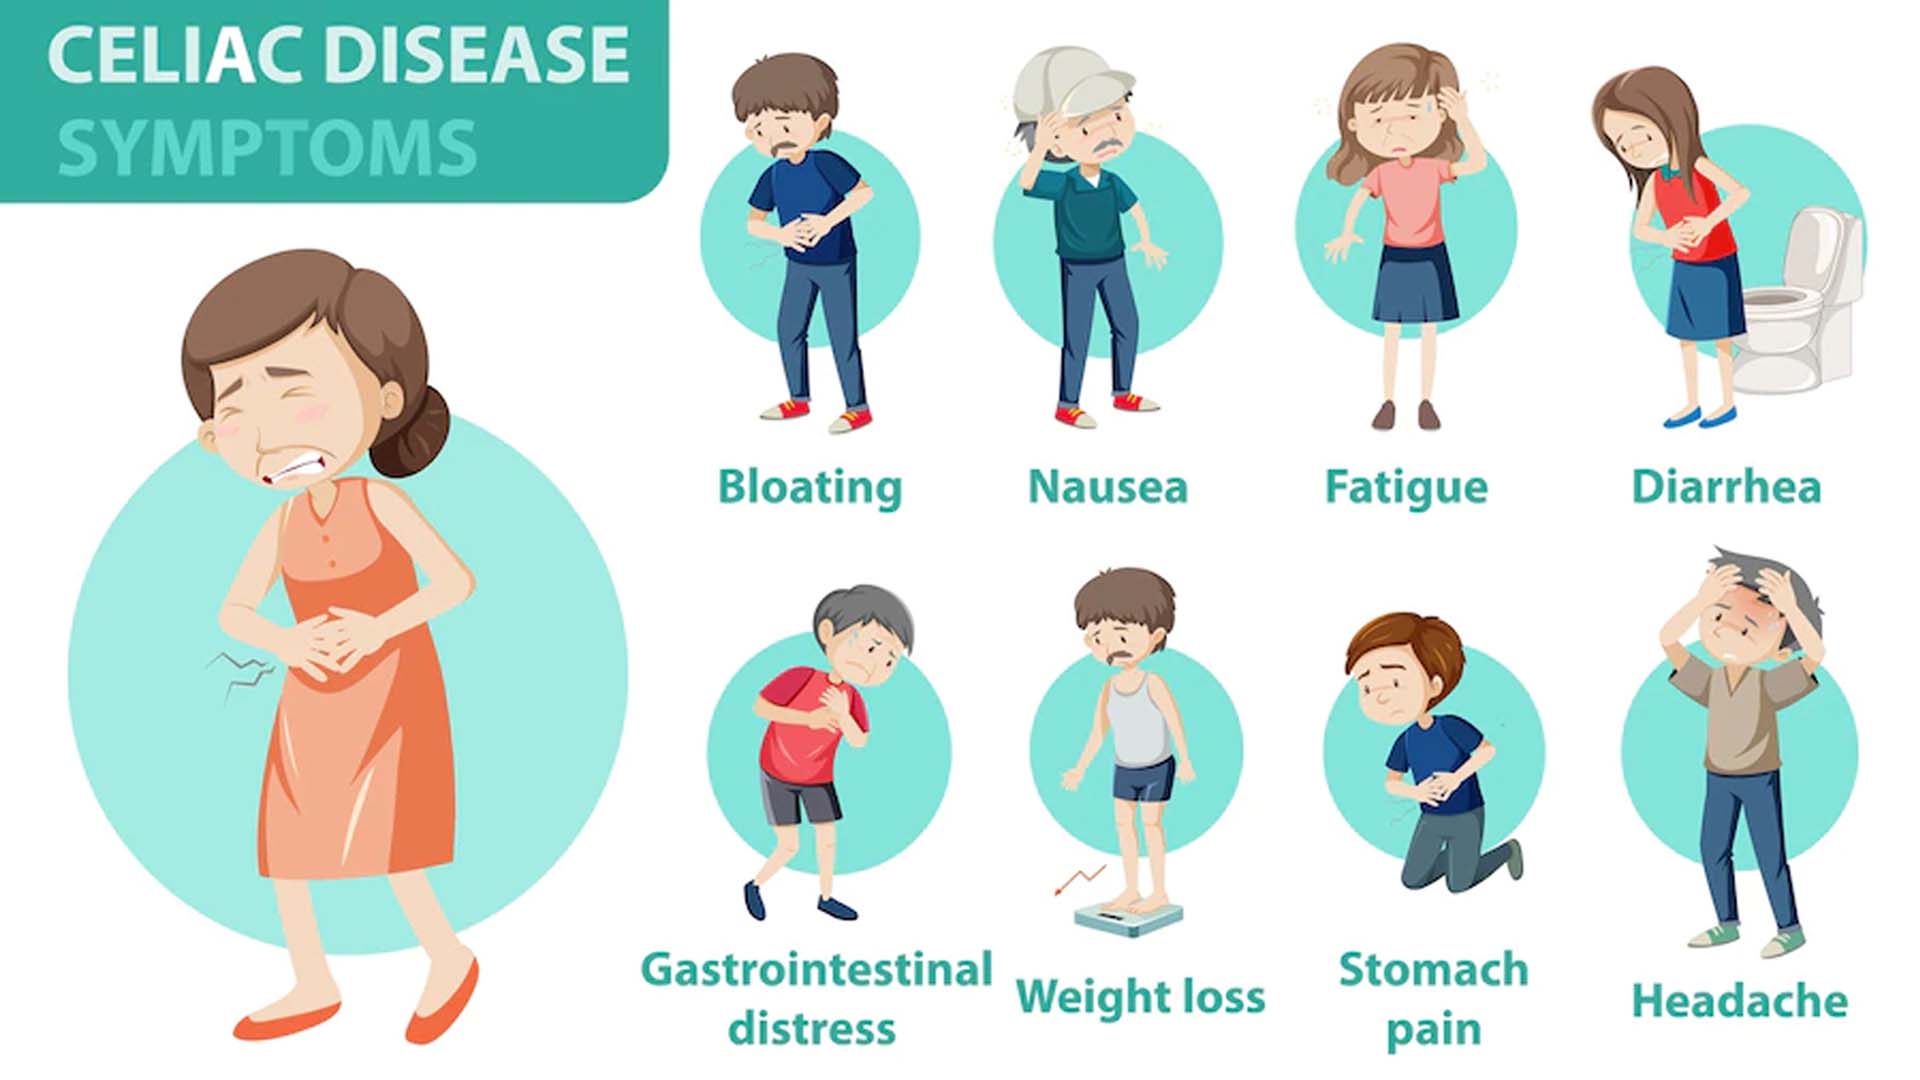 Celiac Disease: Symptoms, Treatment and Diet